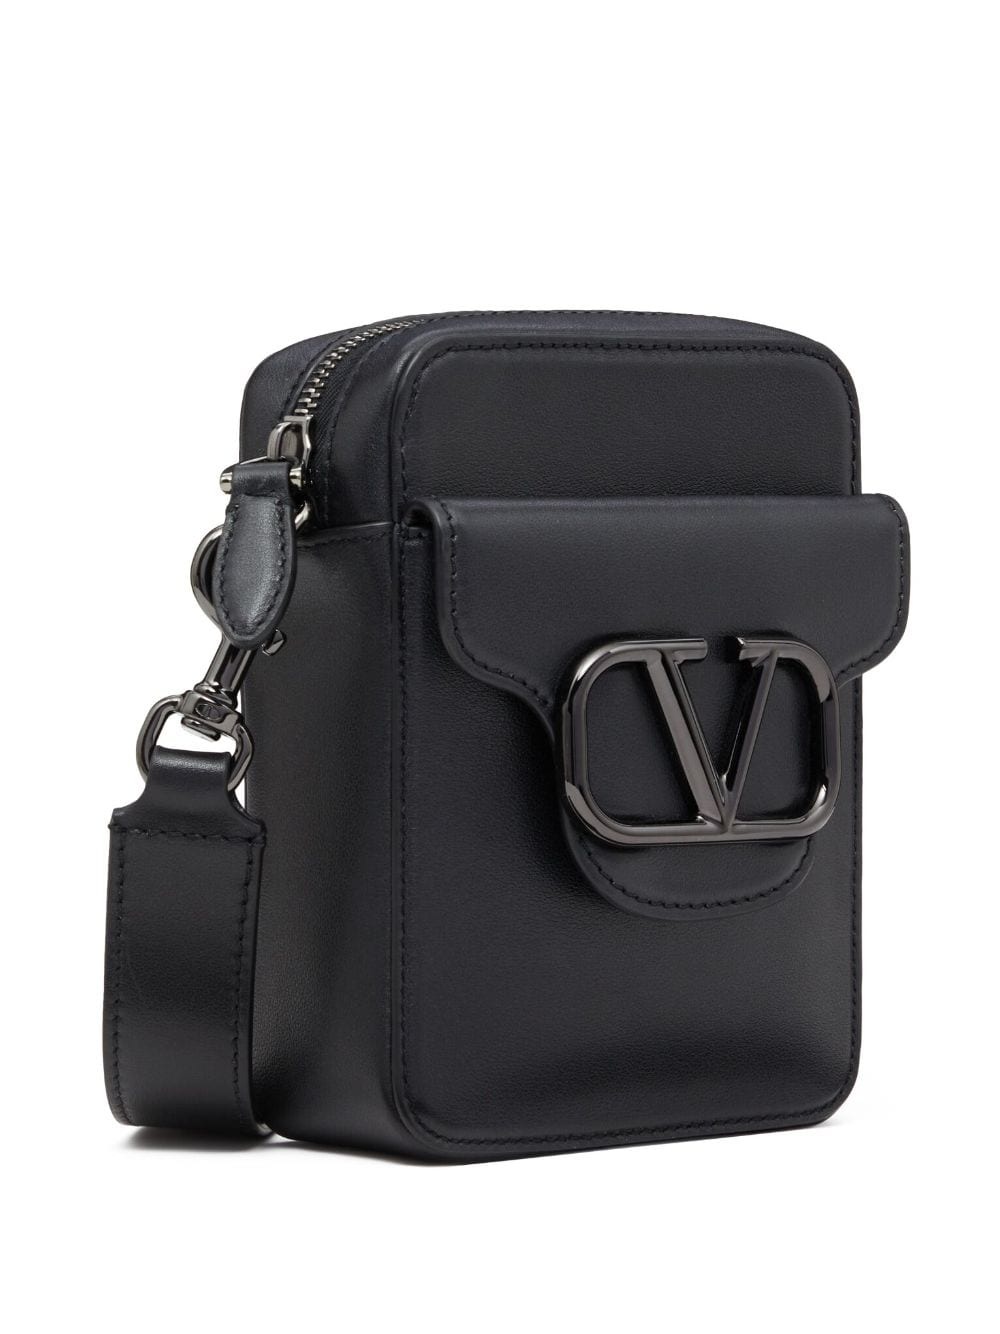 VLogo leather shoulder bag - 4